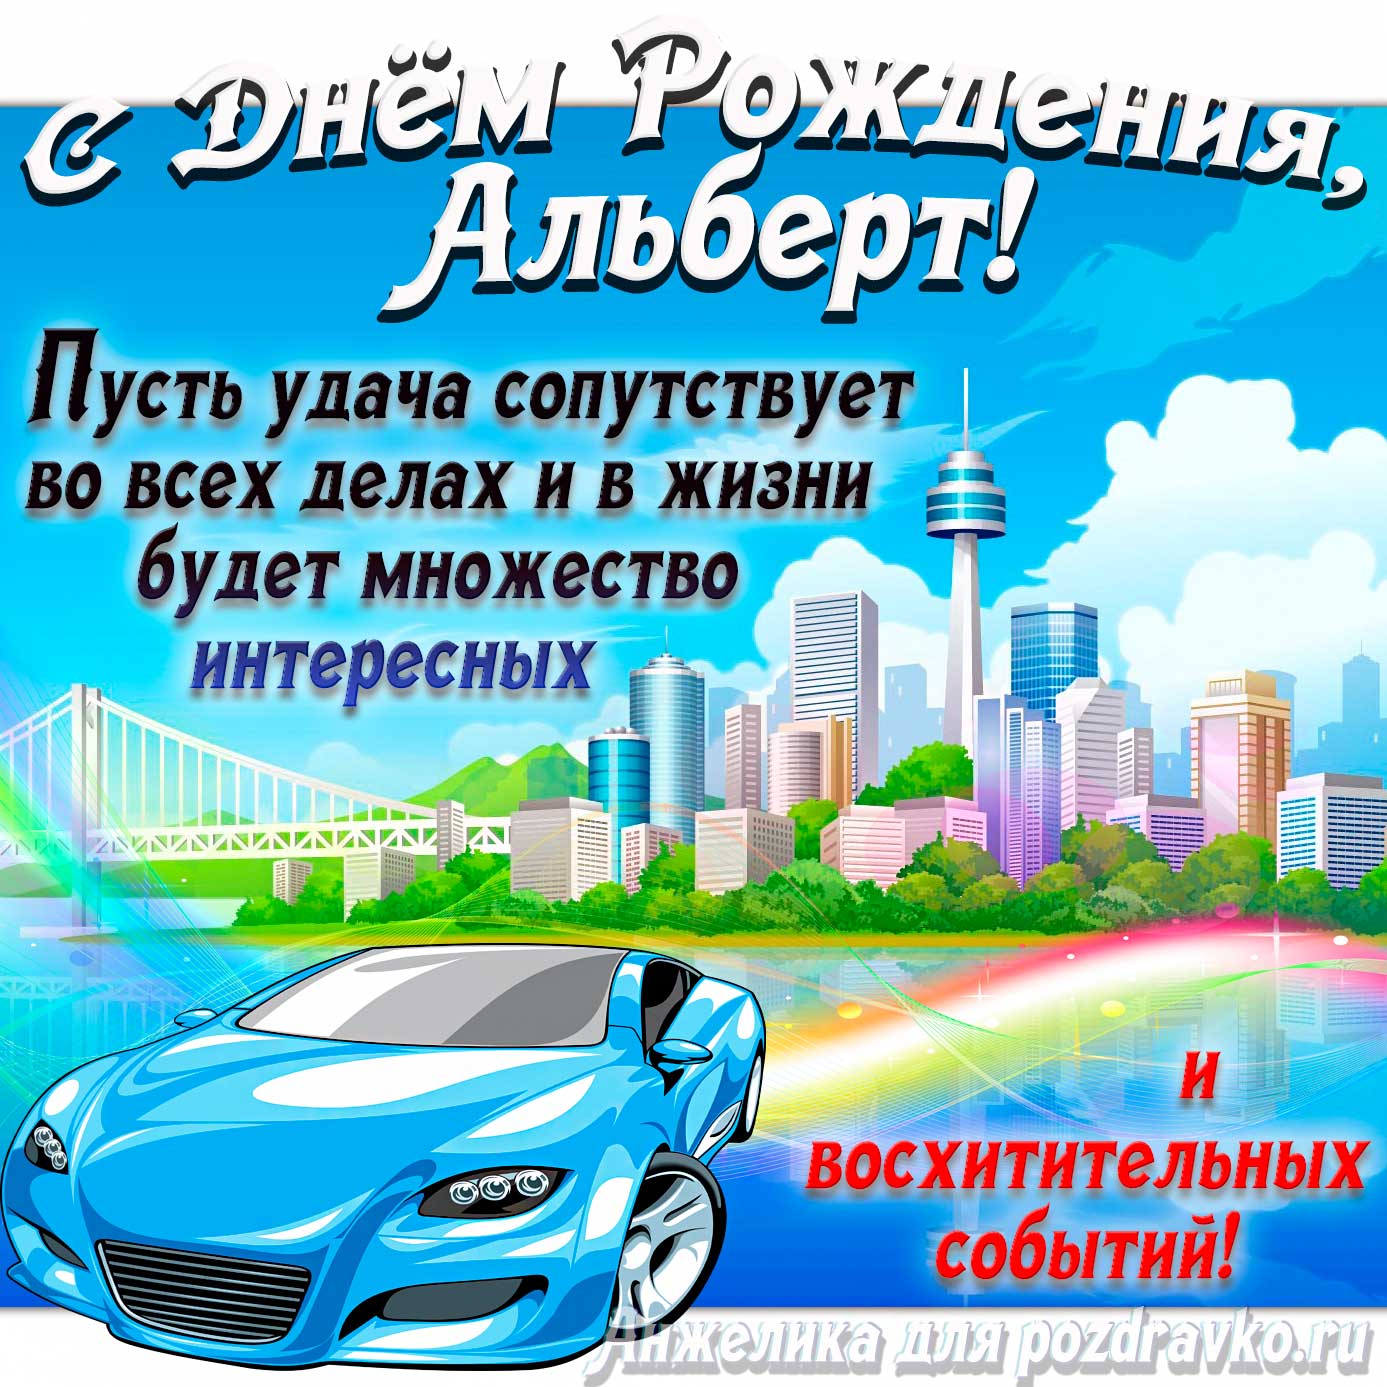 Открытка - с Днём Рождения Альберт с голубой машиной и пожеланием. Скачать бесплатно или отправить картинку.